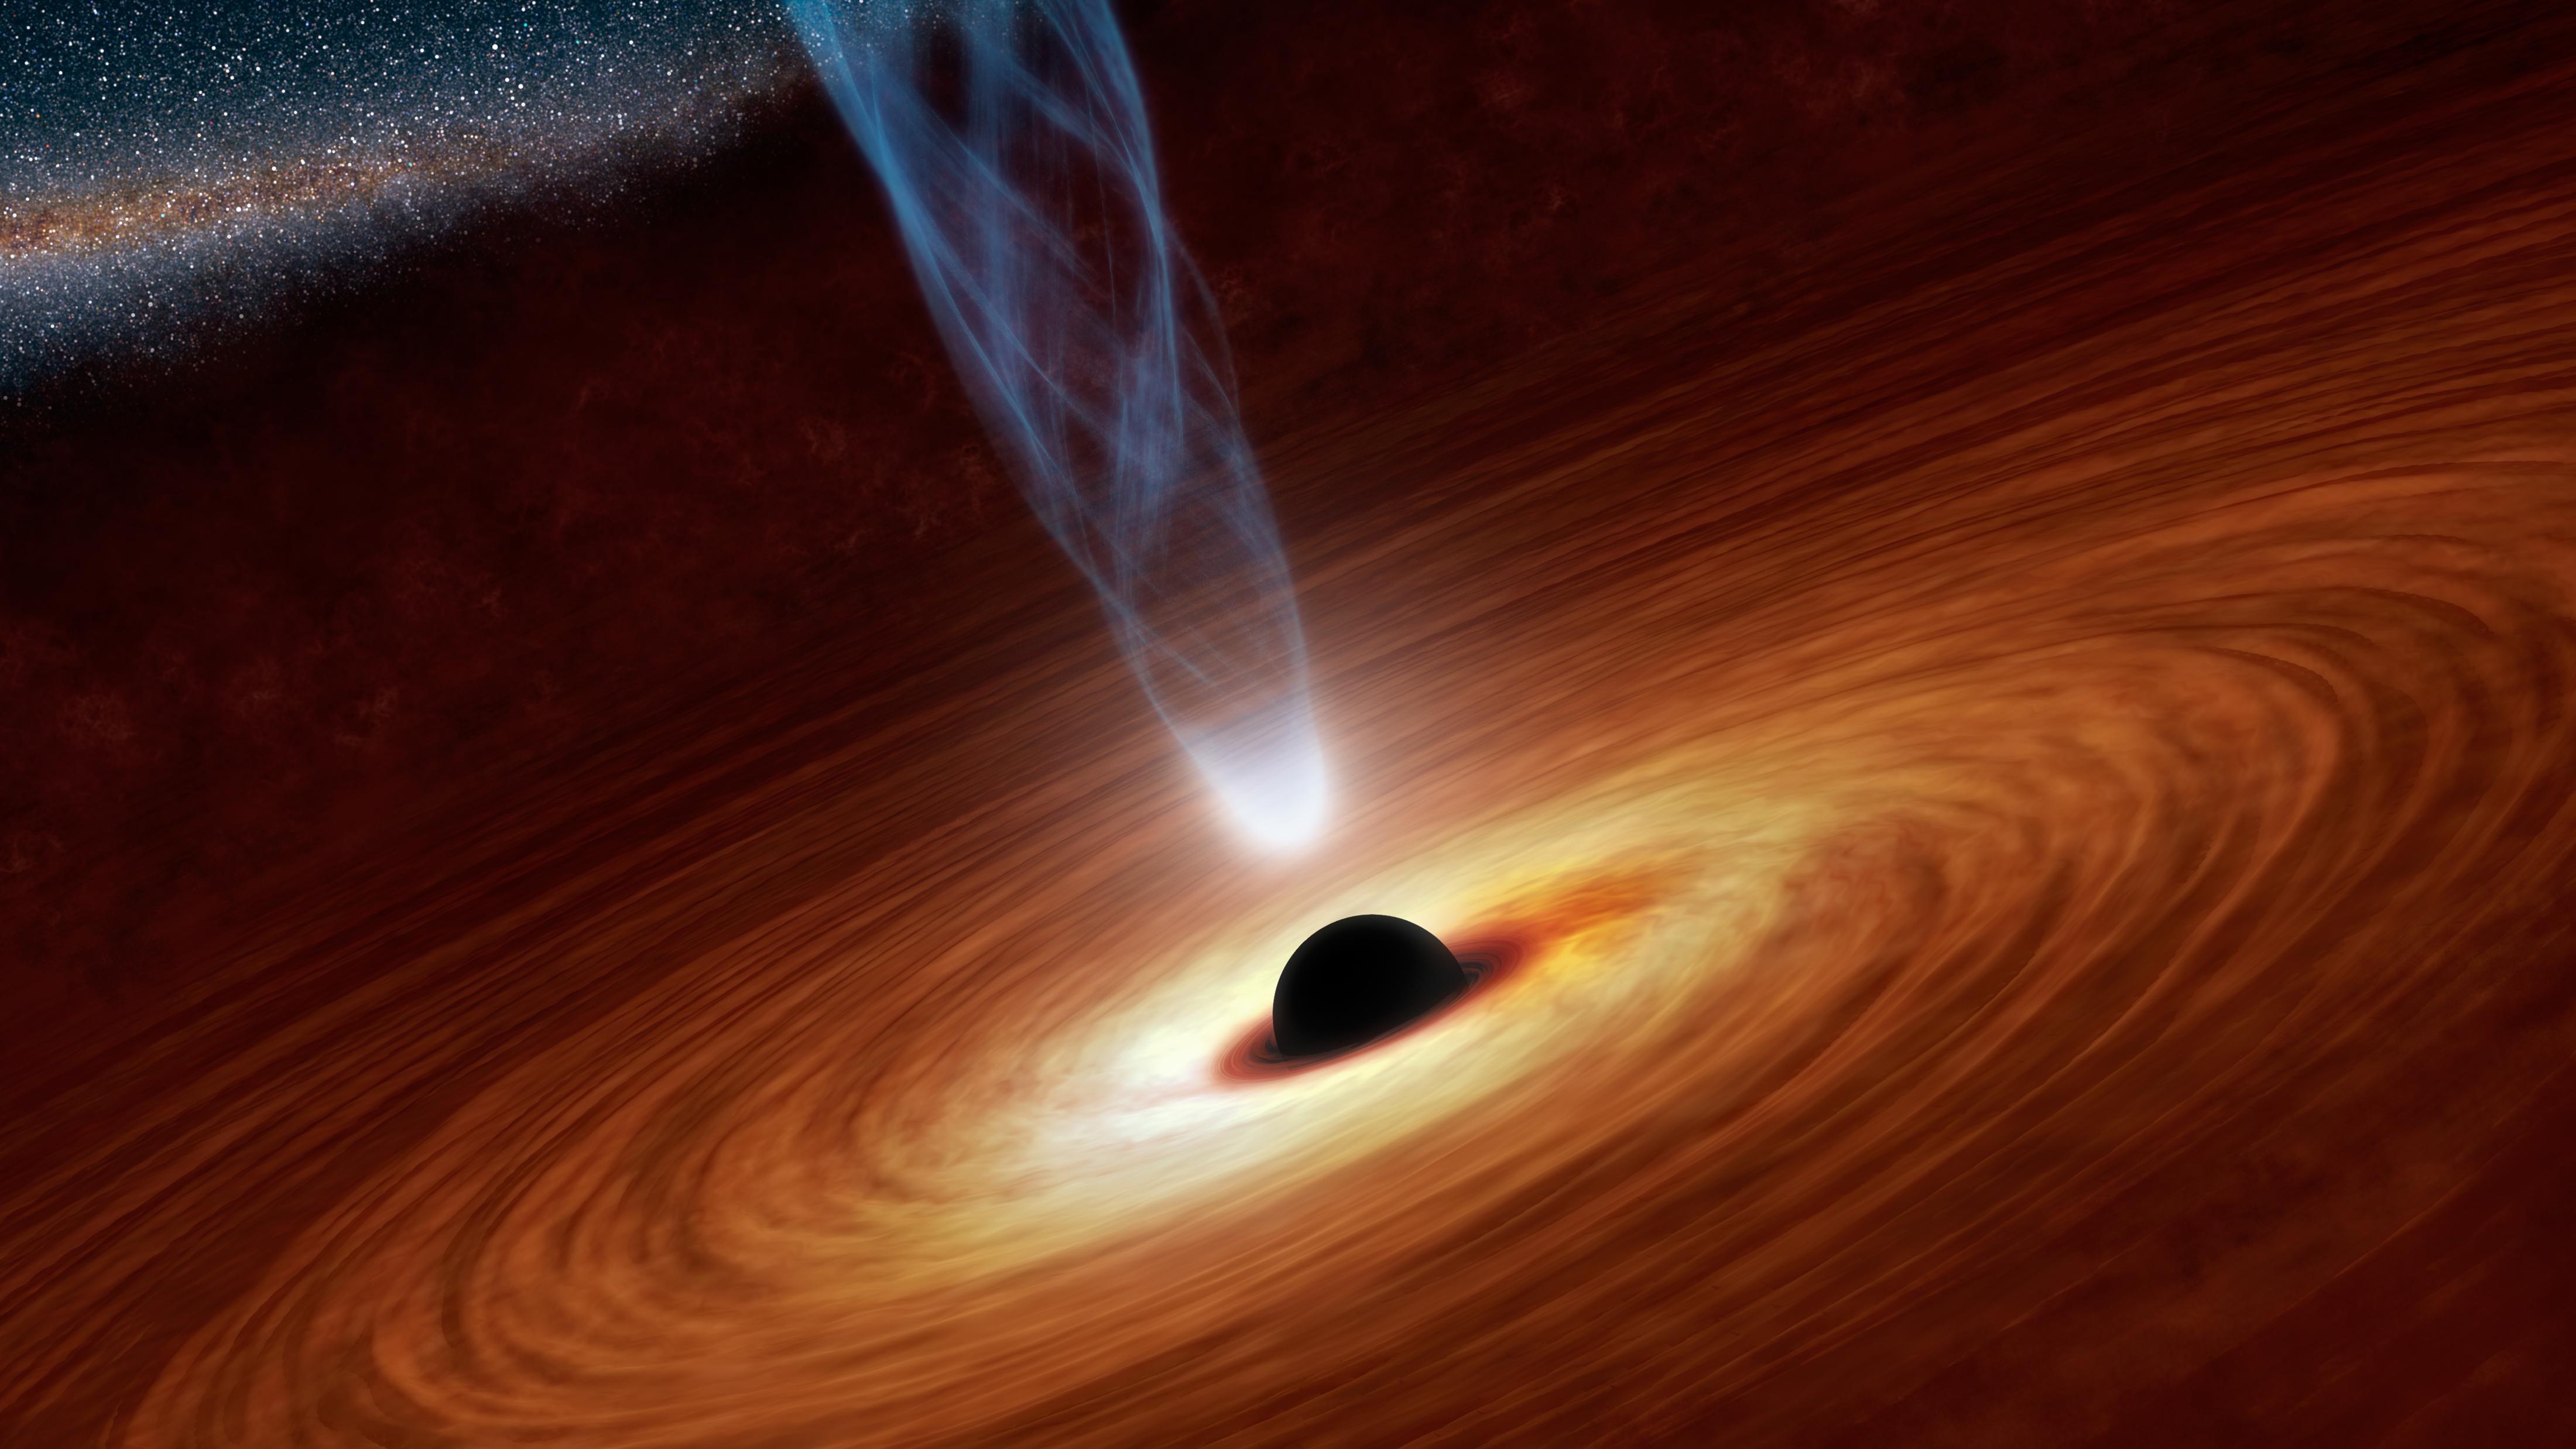 Représentation d'un trou noir, avec son disque d'accrétion et un jet de matière relativiste. © Nasa, Caltech-JPL